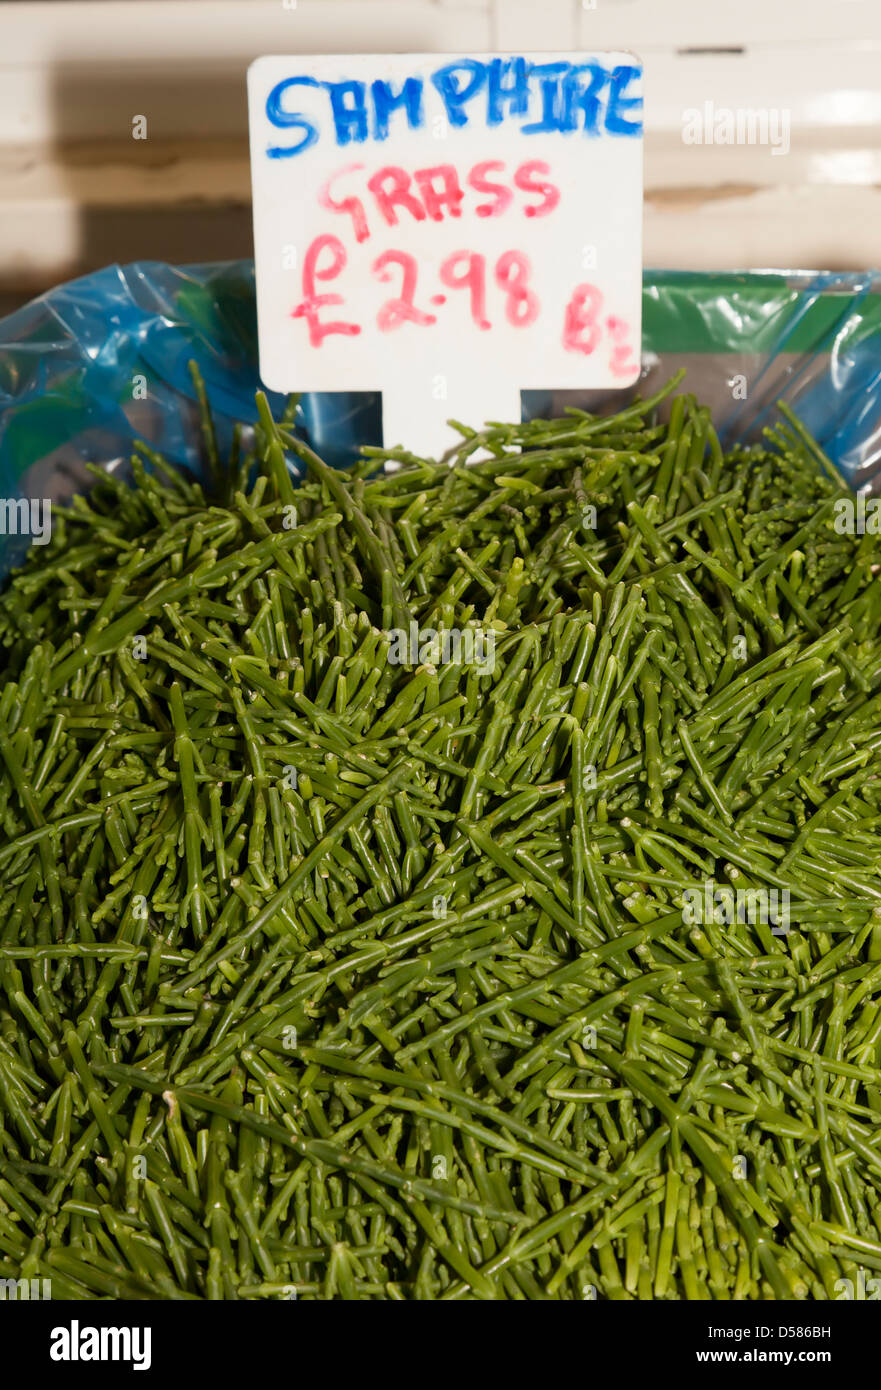 Samphire grass or glasswort Salicornia fruticosa on sale in market, St Helier, Jersey, Channel Islands, UK Stock Photo